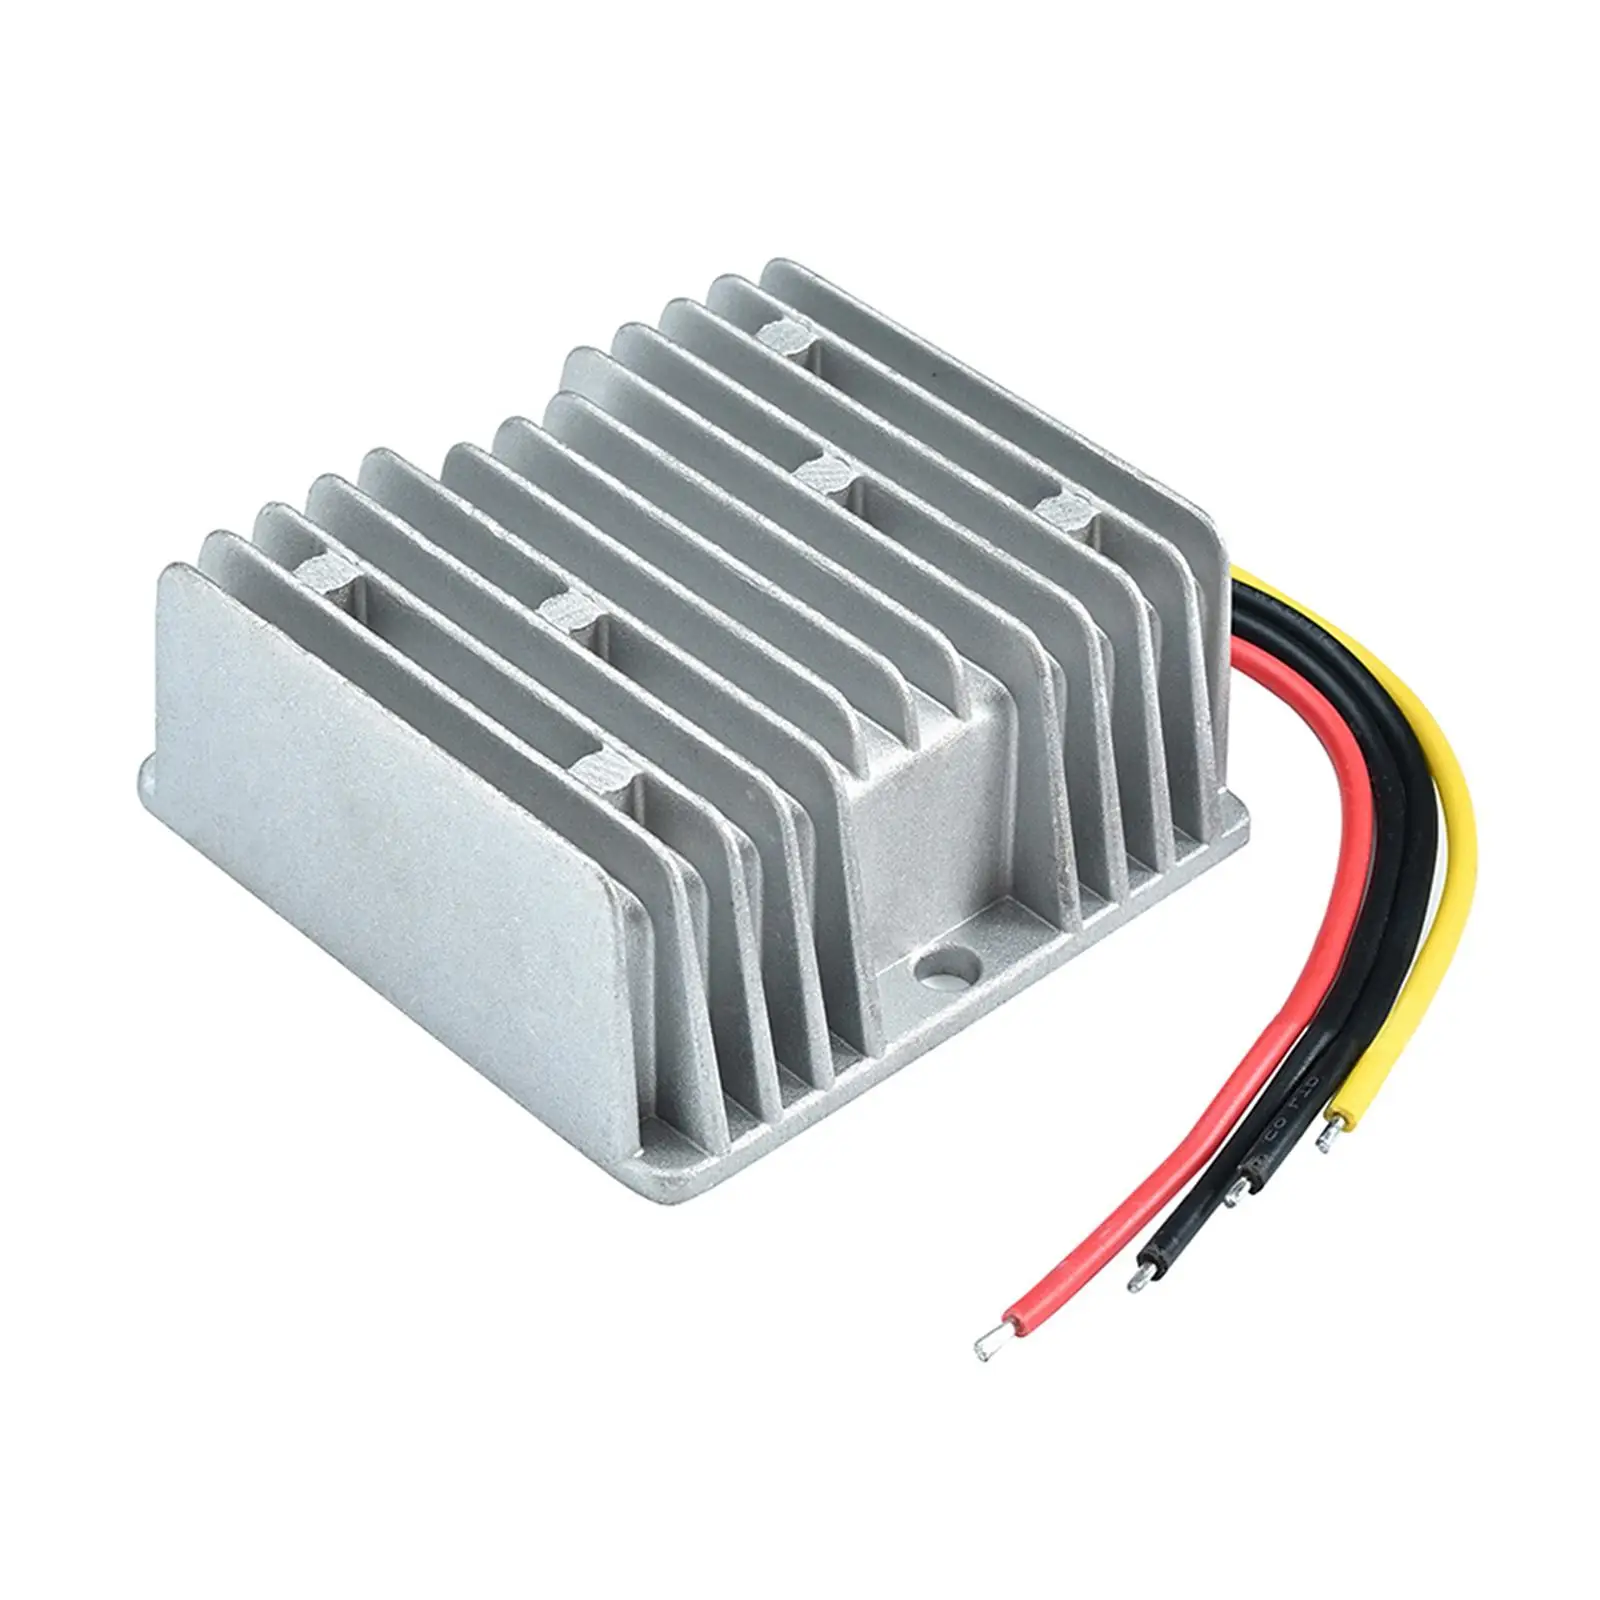 Converter Voltage Regulator IP68 Waterproof Replaces Heat Dissipation for Audio Cart